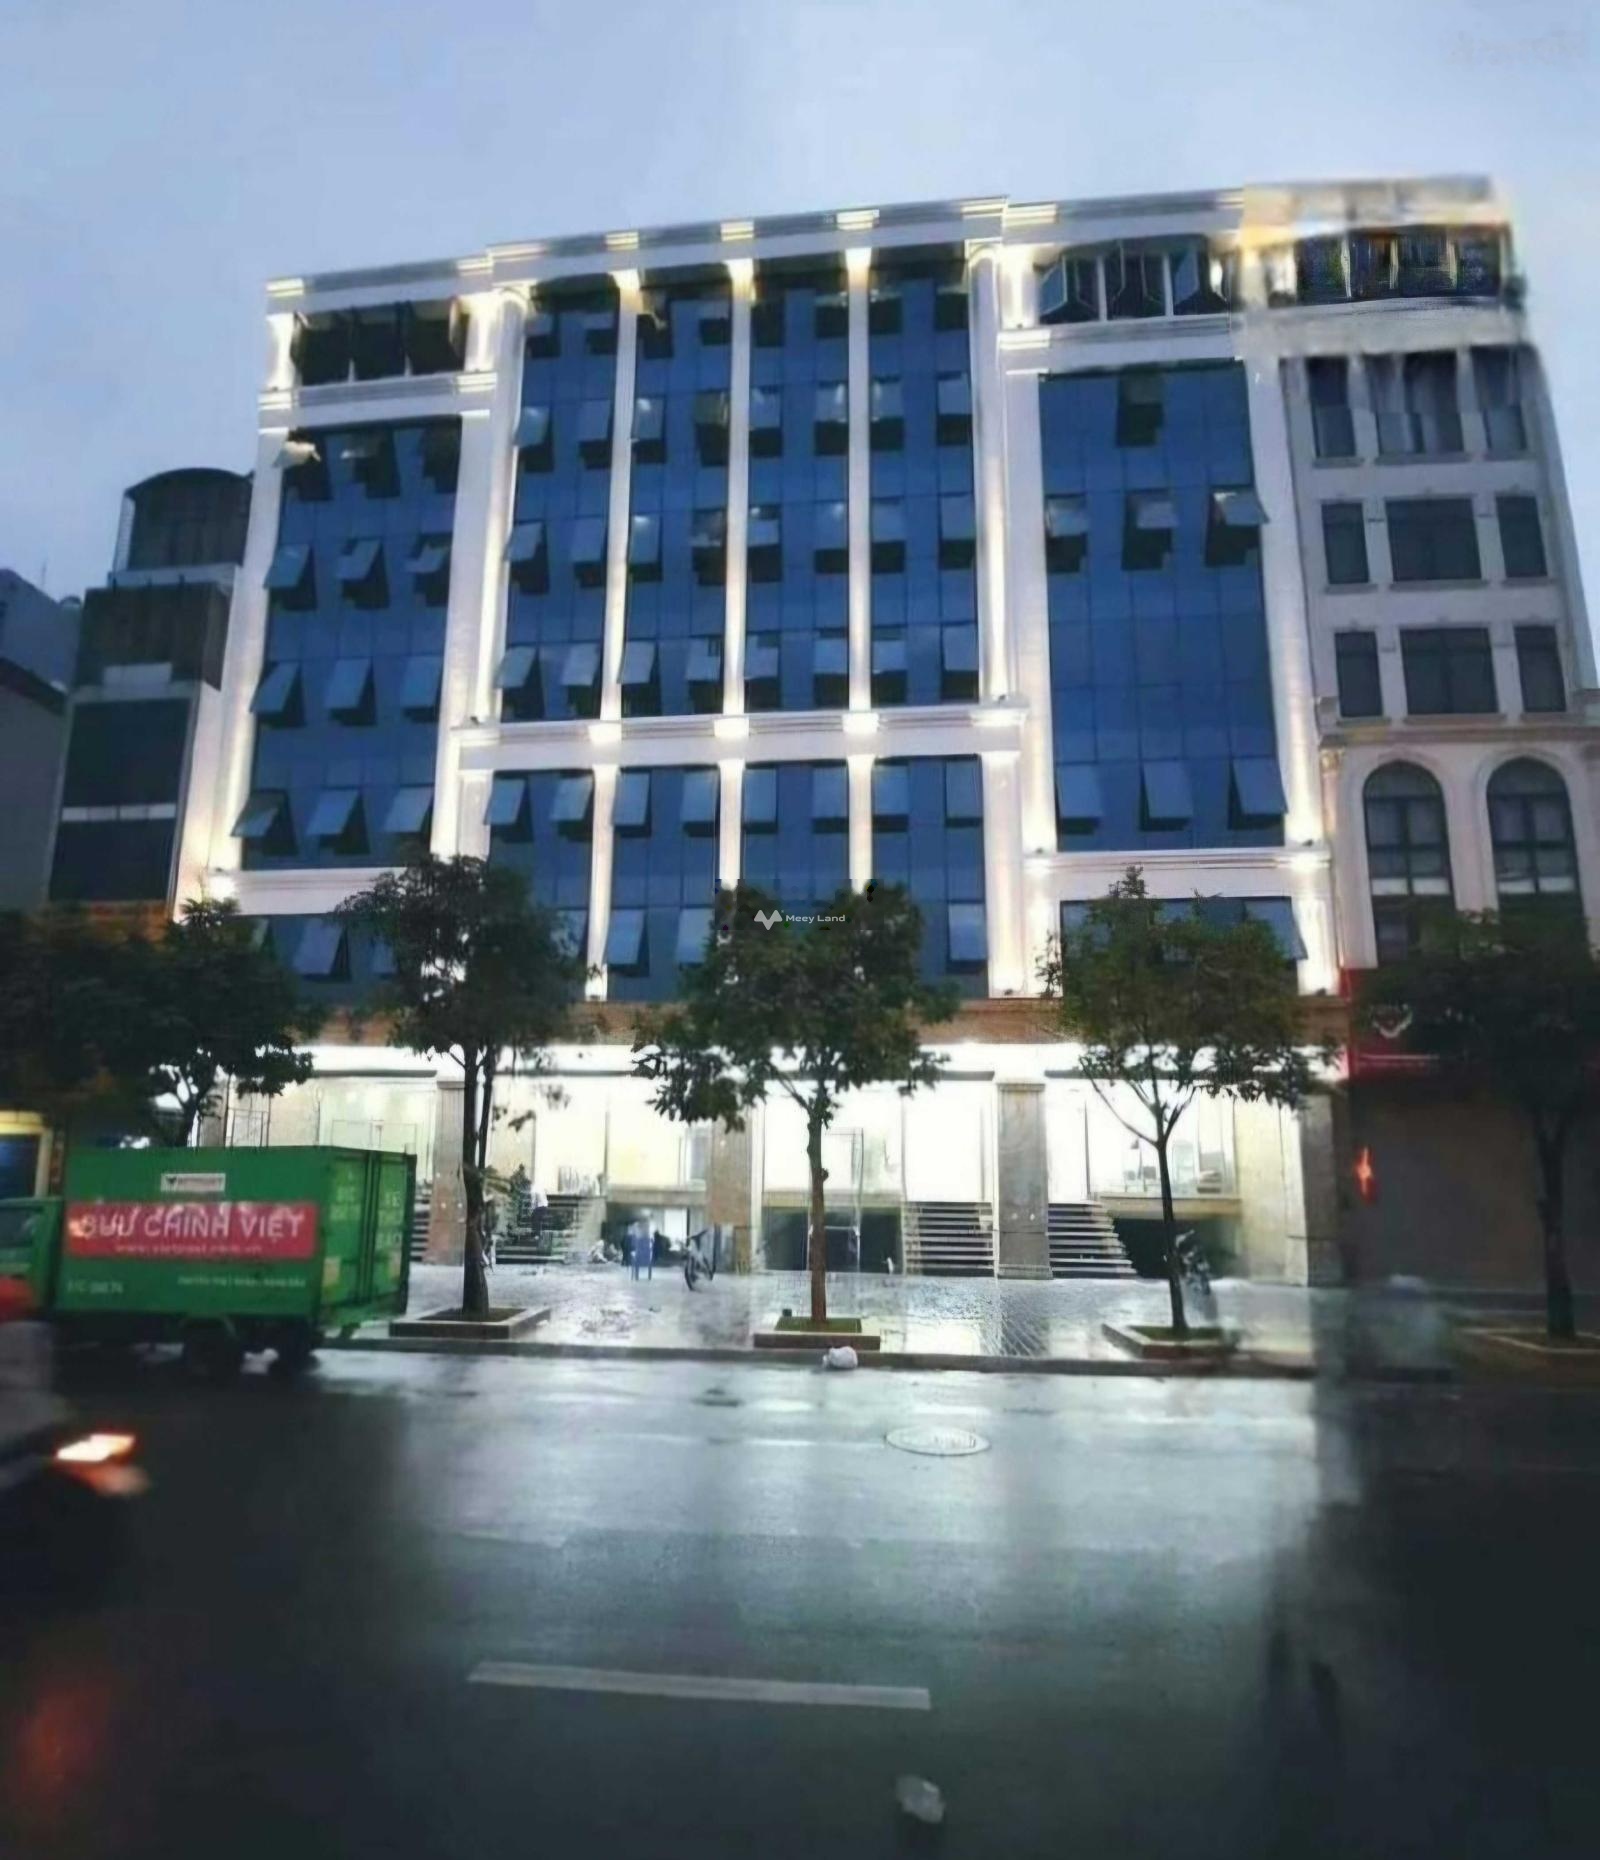 Bán nhà mặt phố Thái Hà DT 420m 10 tầng MT 18m, cho thuê 800tr/th. Có GPXD, hoàn công, PCCC đầy đủ 